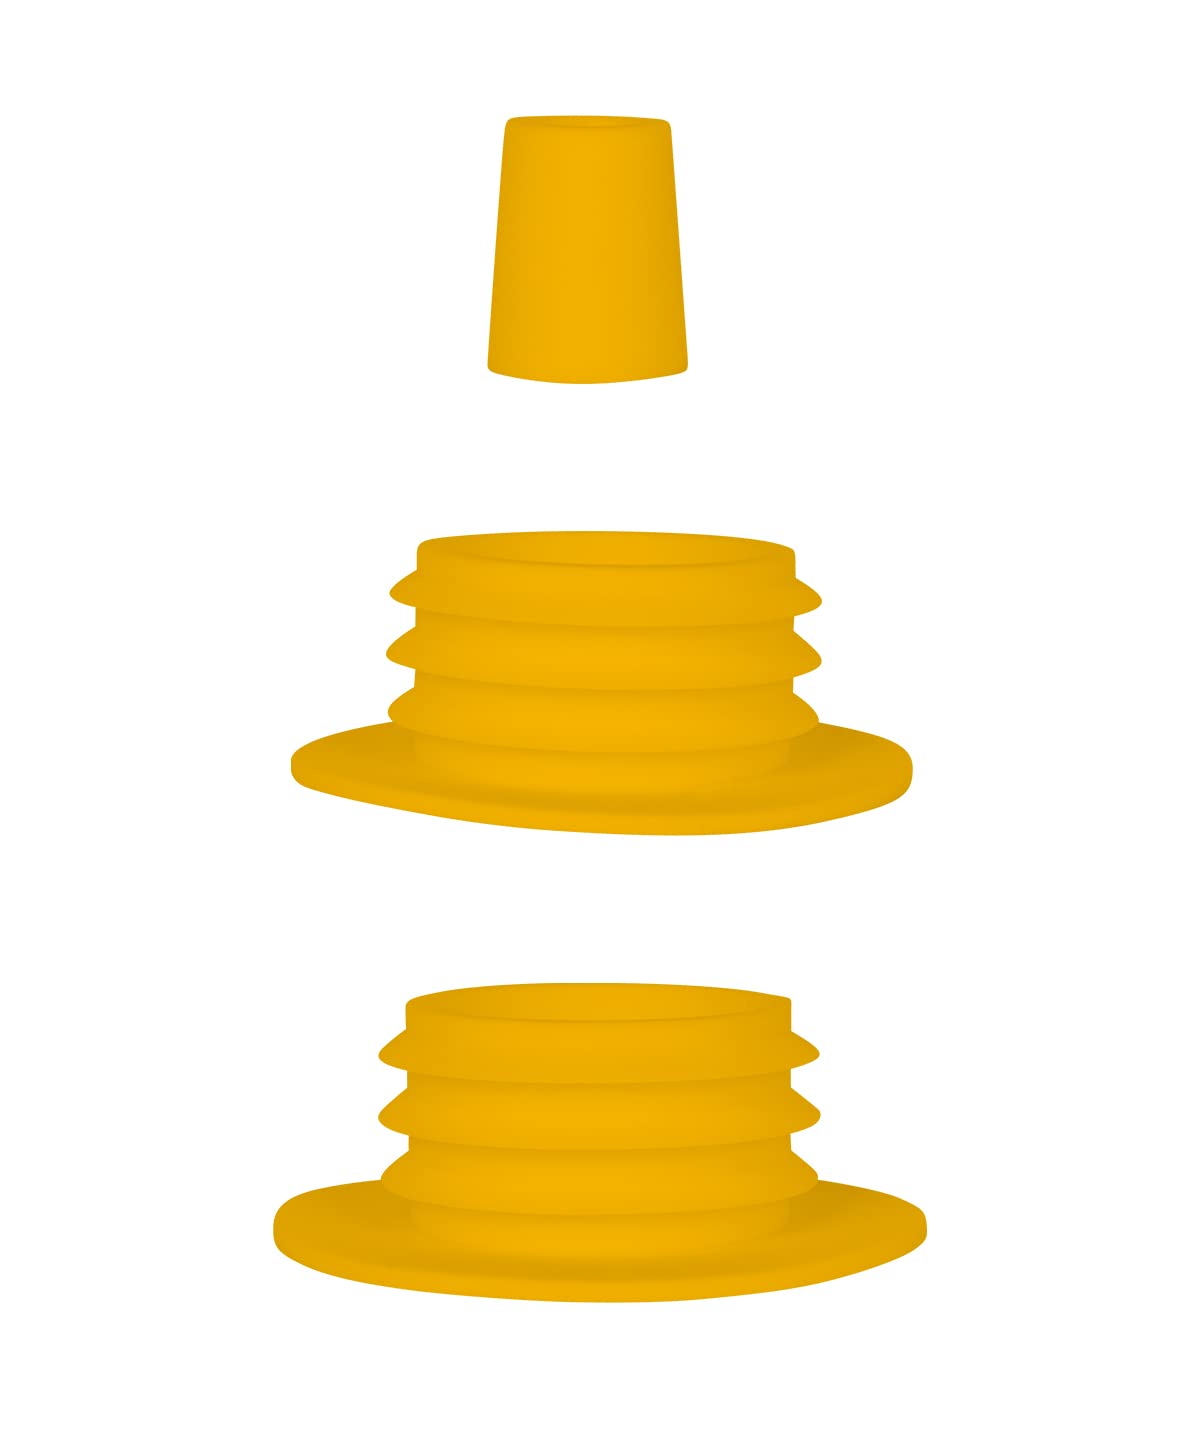 Moze Dichtungsset -Yellow - 3er Set - Dichtungen mit unterschiedlichen Größen - leichte Reinigung und Spülmaschinen kompatibel - benutzbar für alle Steckbowls von Moze